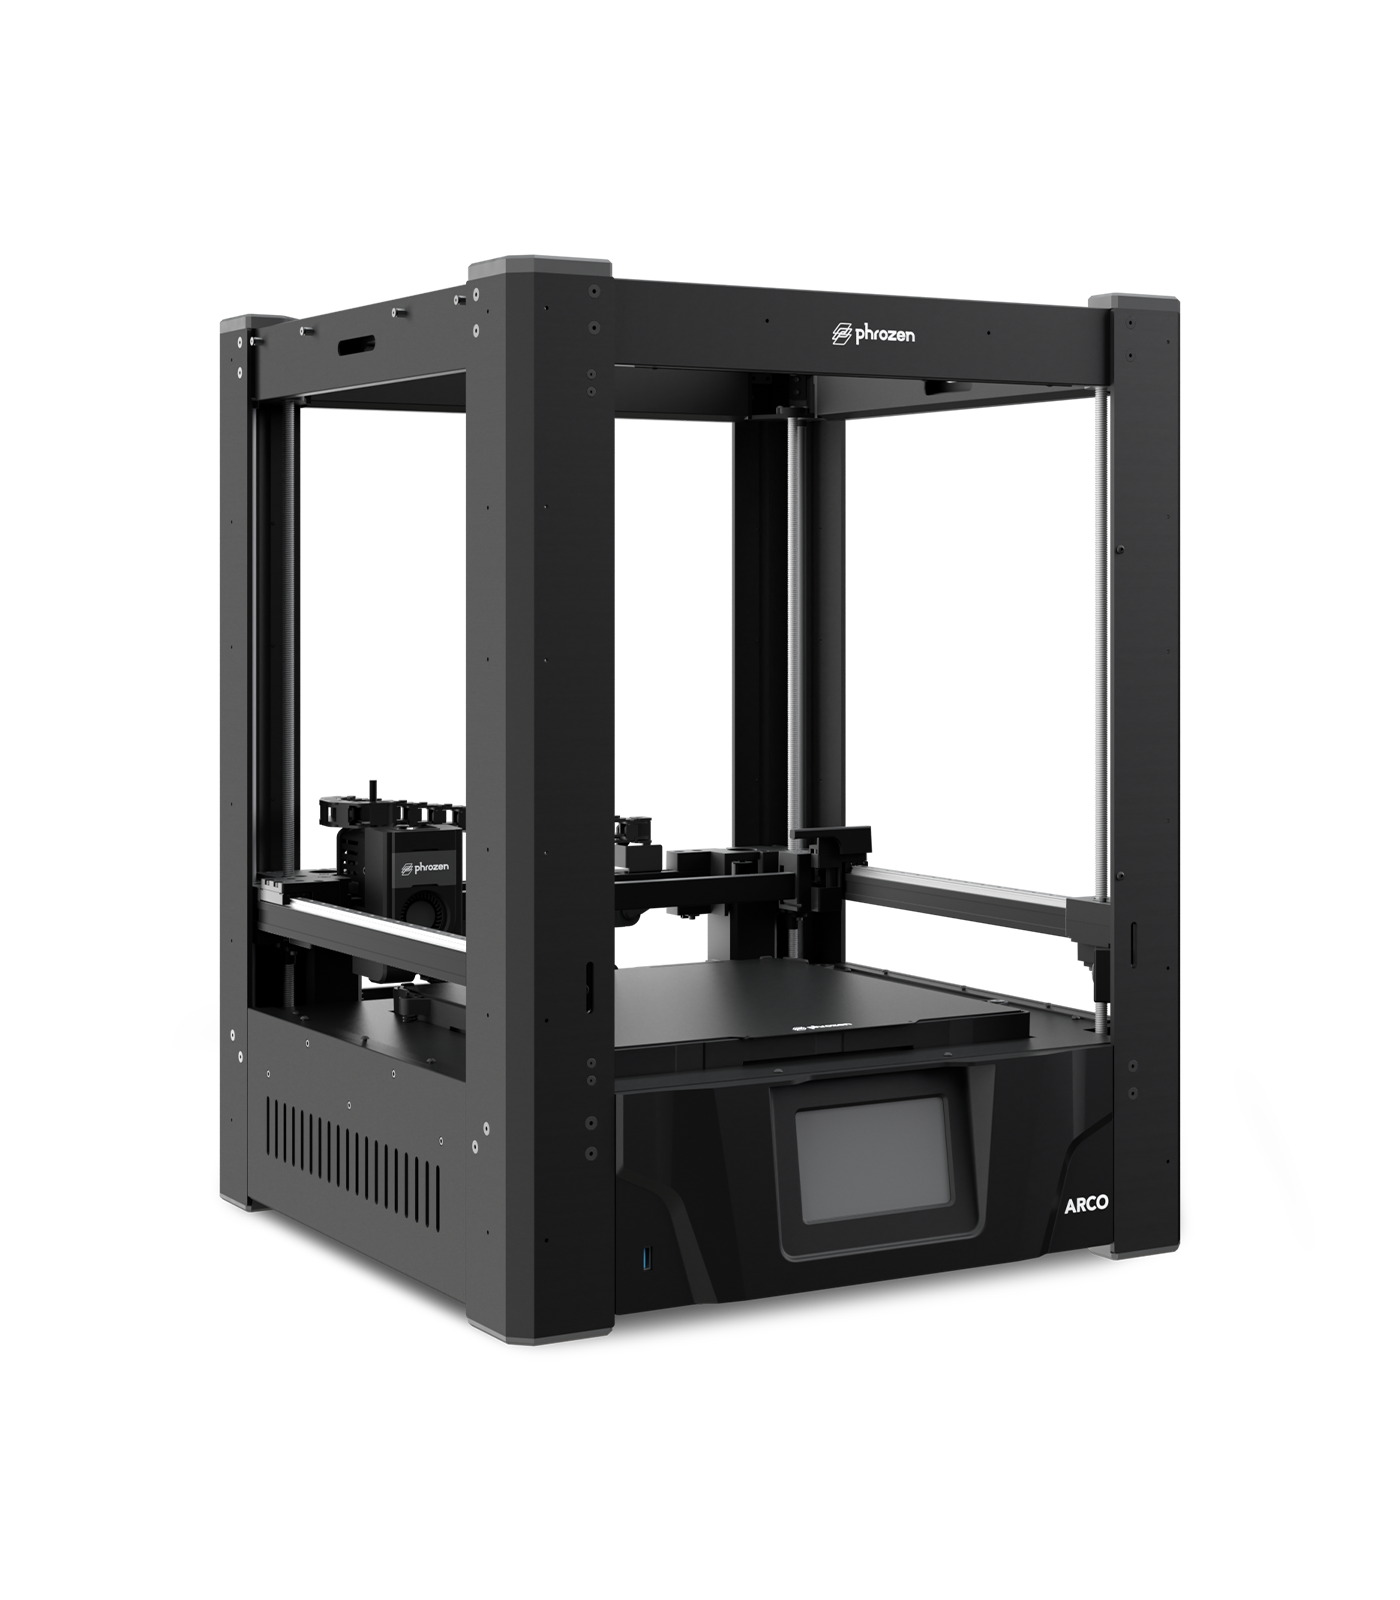 Phrozen Arco FDM 3D Printer